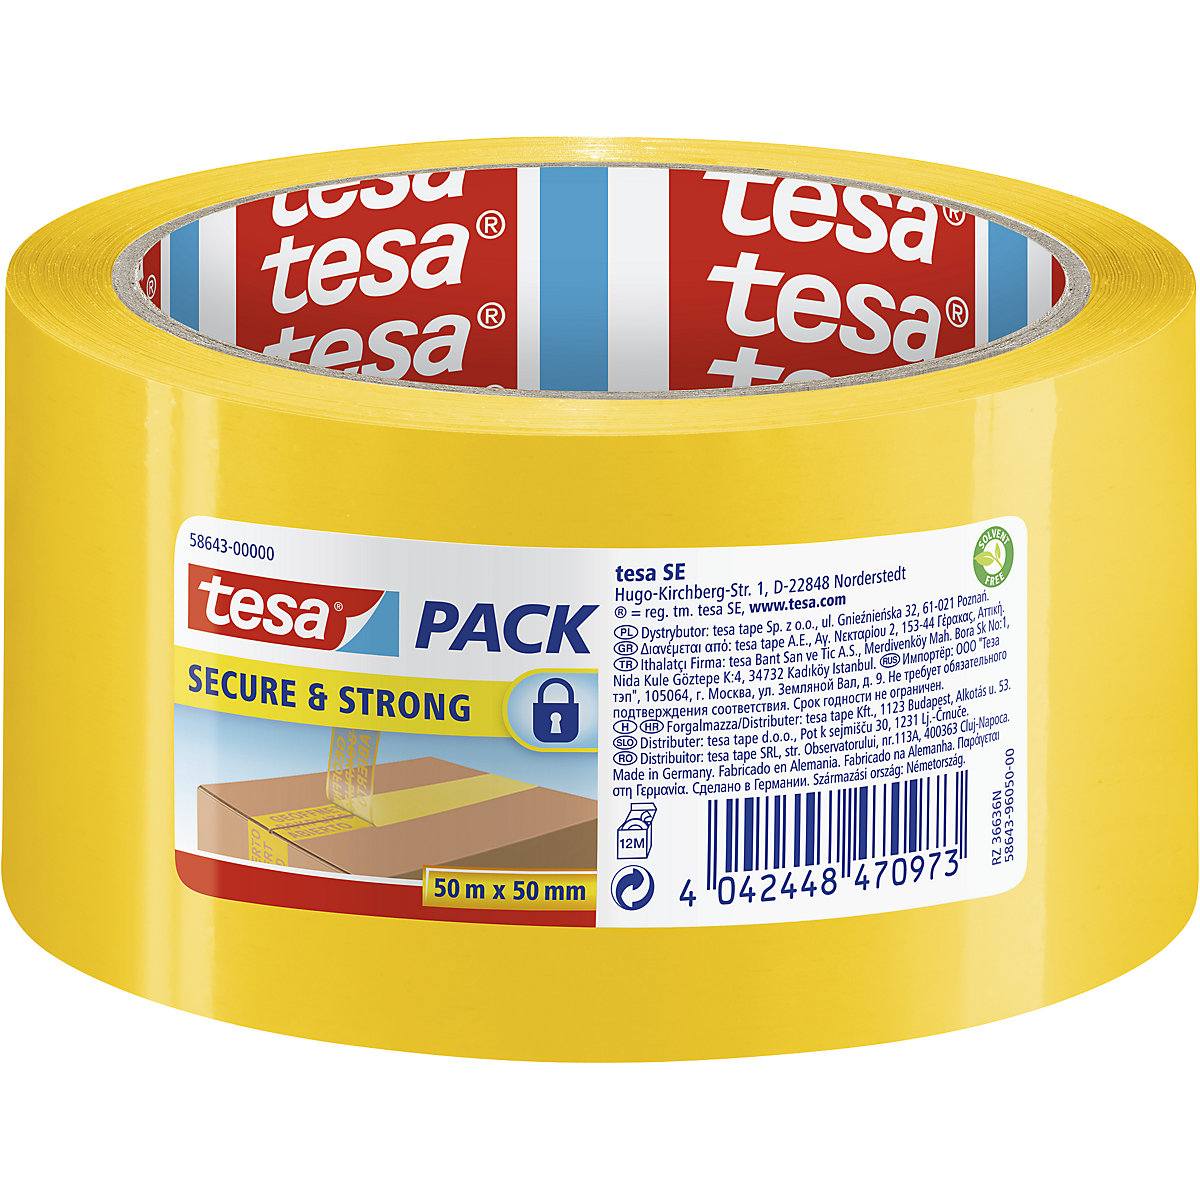 Bezpečnostní pečetní páska – tesa